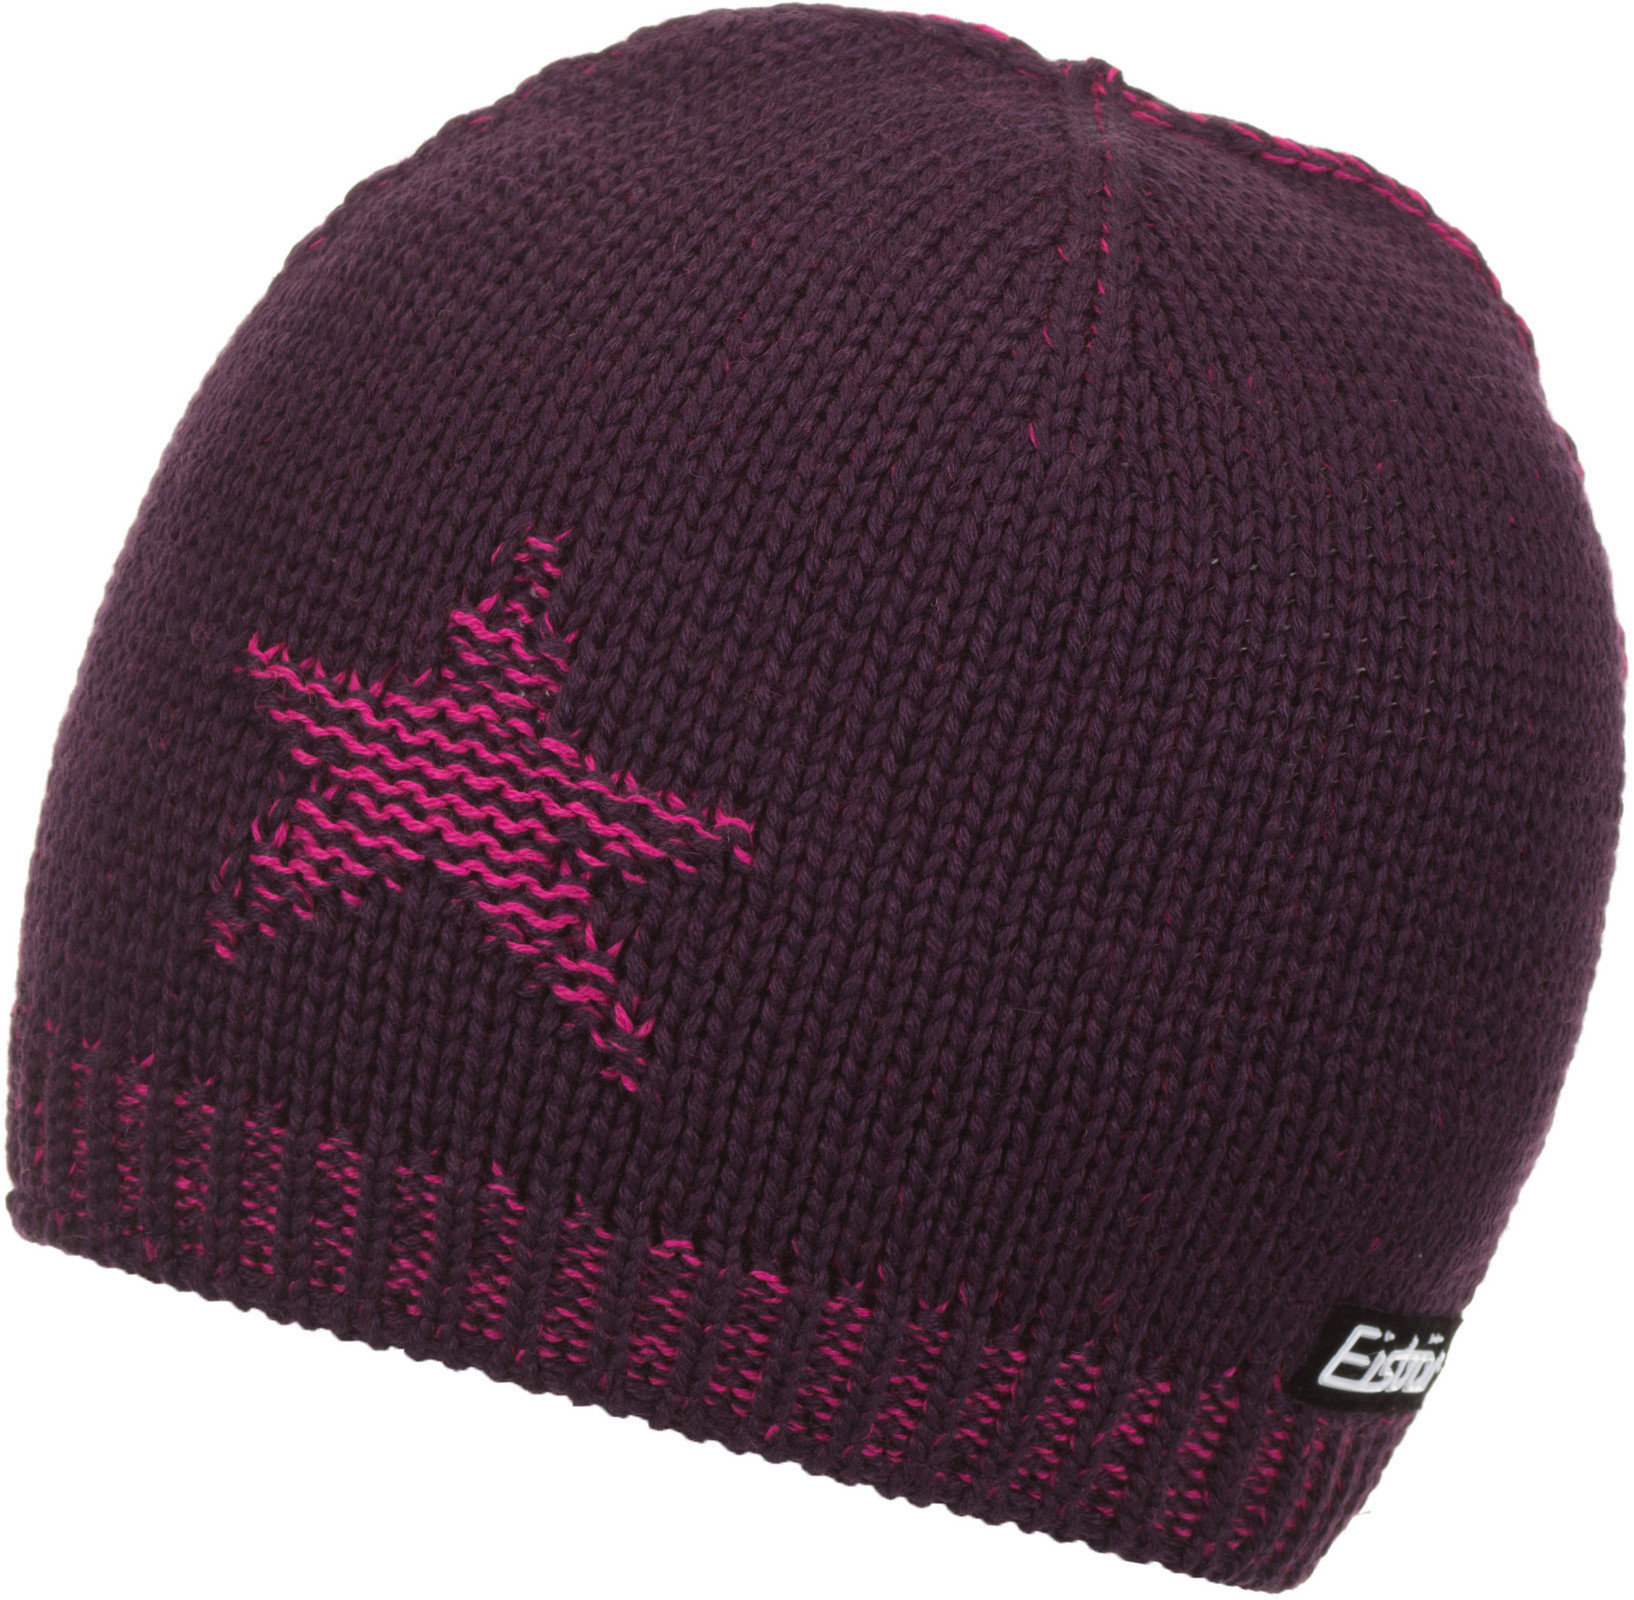 Σκούφος Σκι Eisbär Snap Hat Purple/Deep Pink UNI Σκούφος Σκι